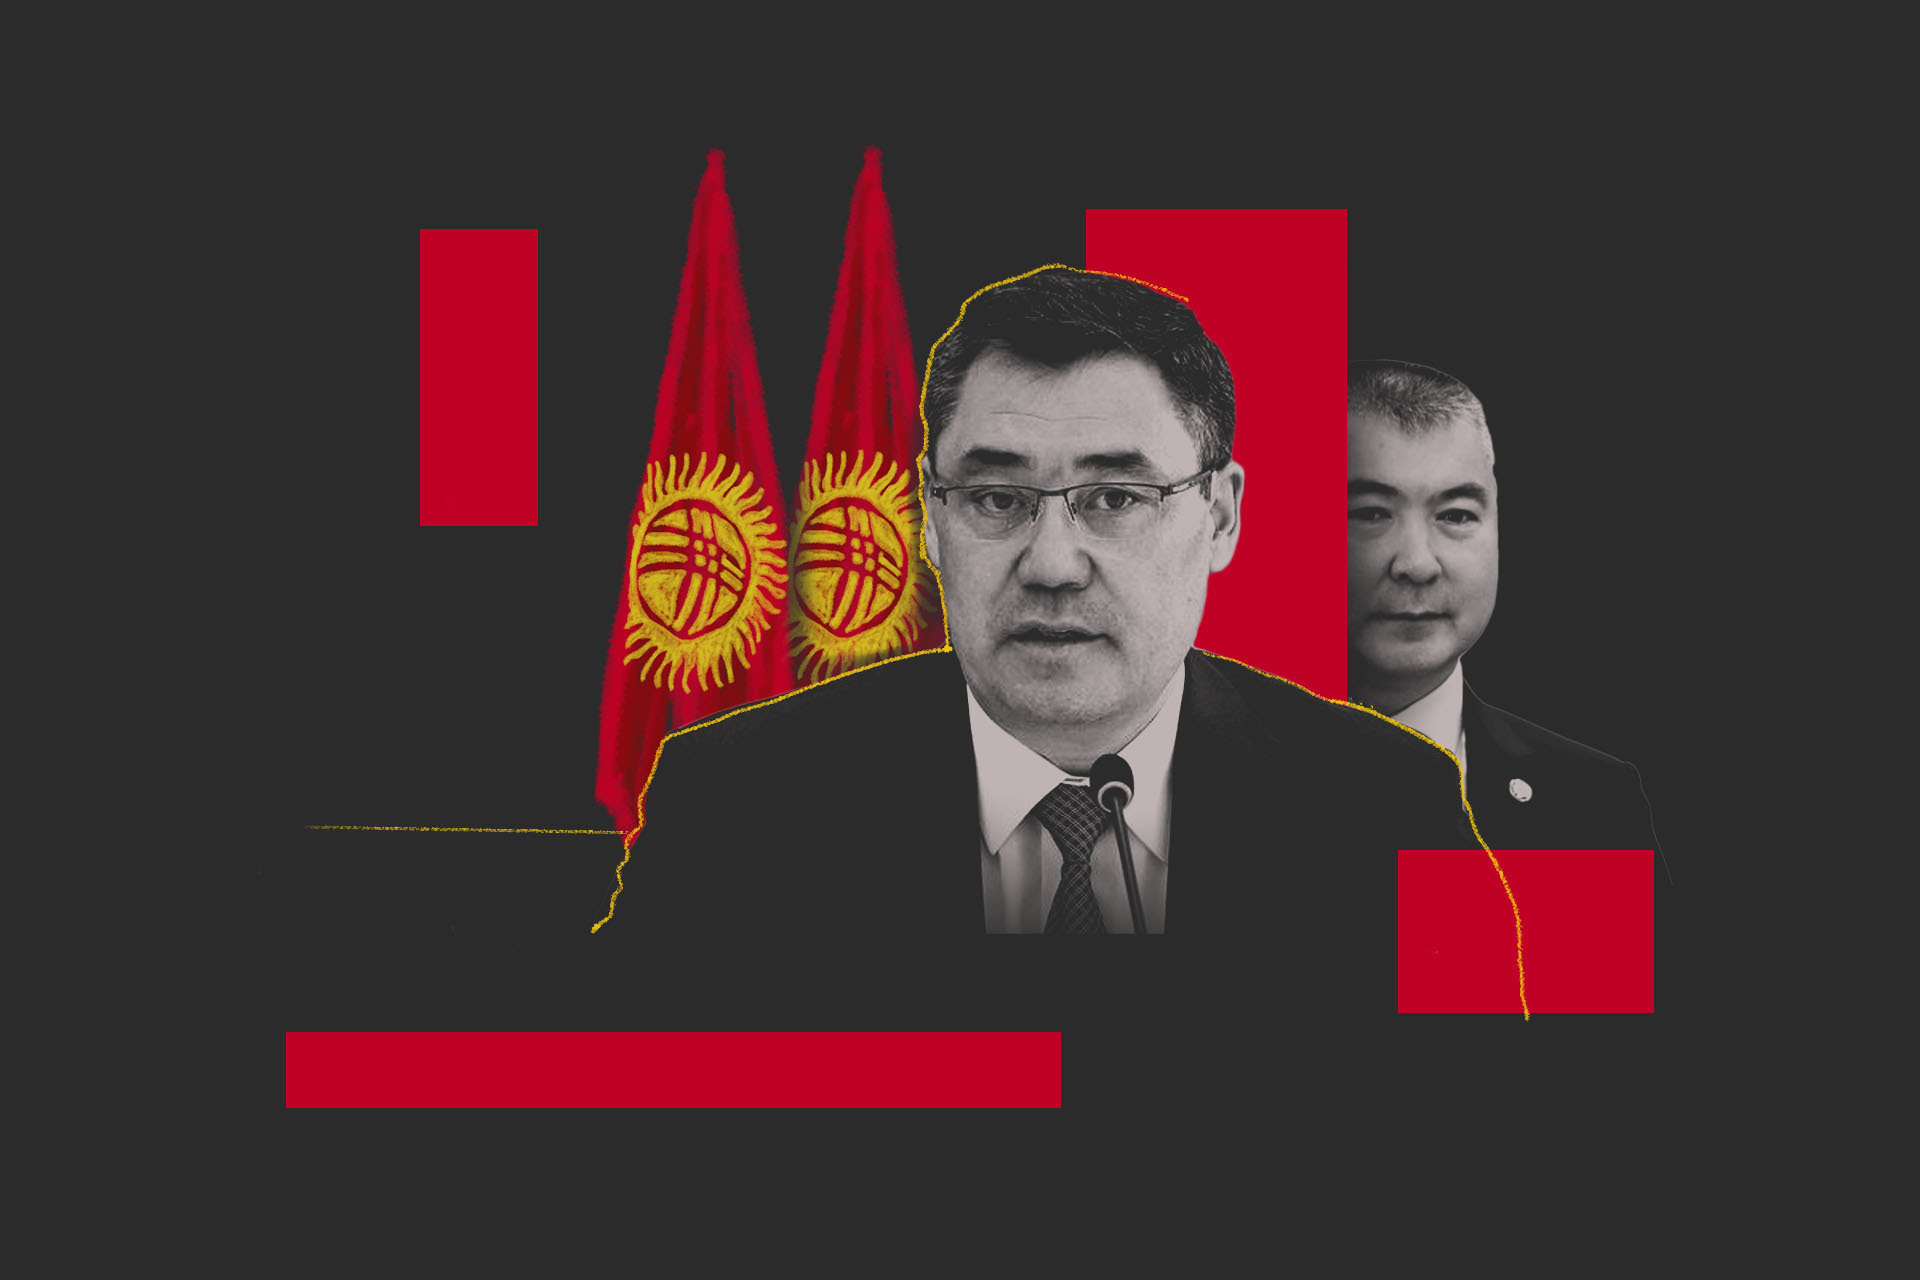 Вся президентская рать. Как госпроекты в Кыргызстане передали доверенным лицам